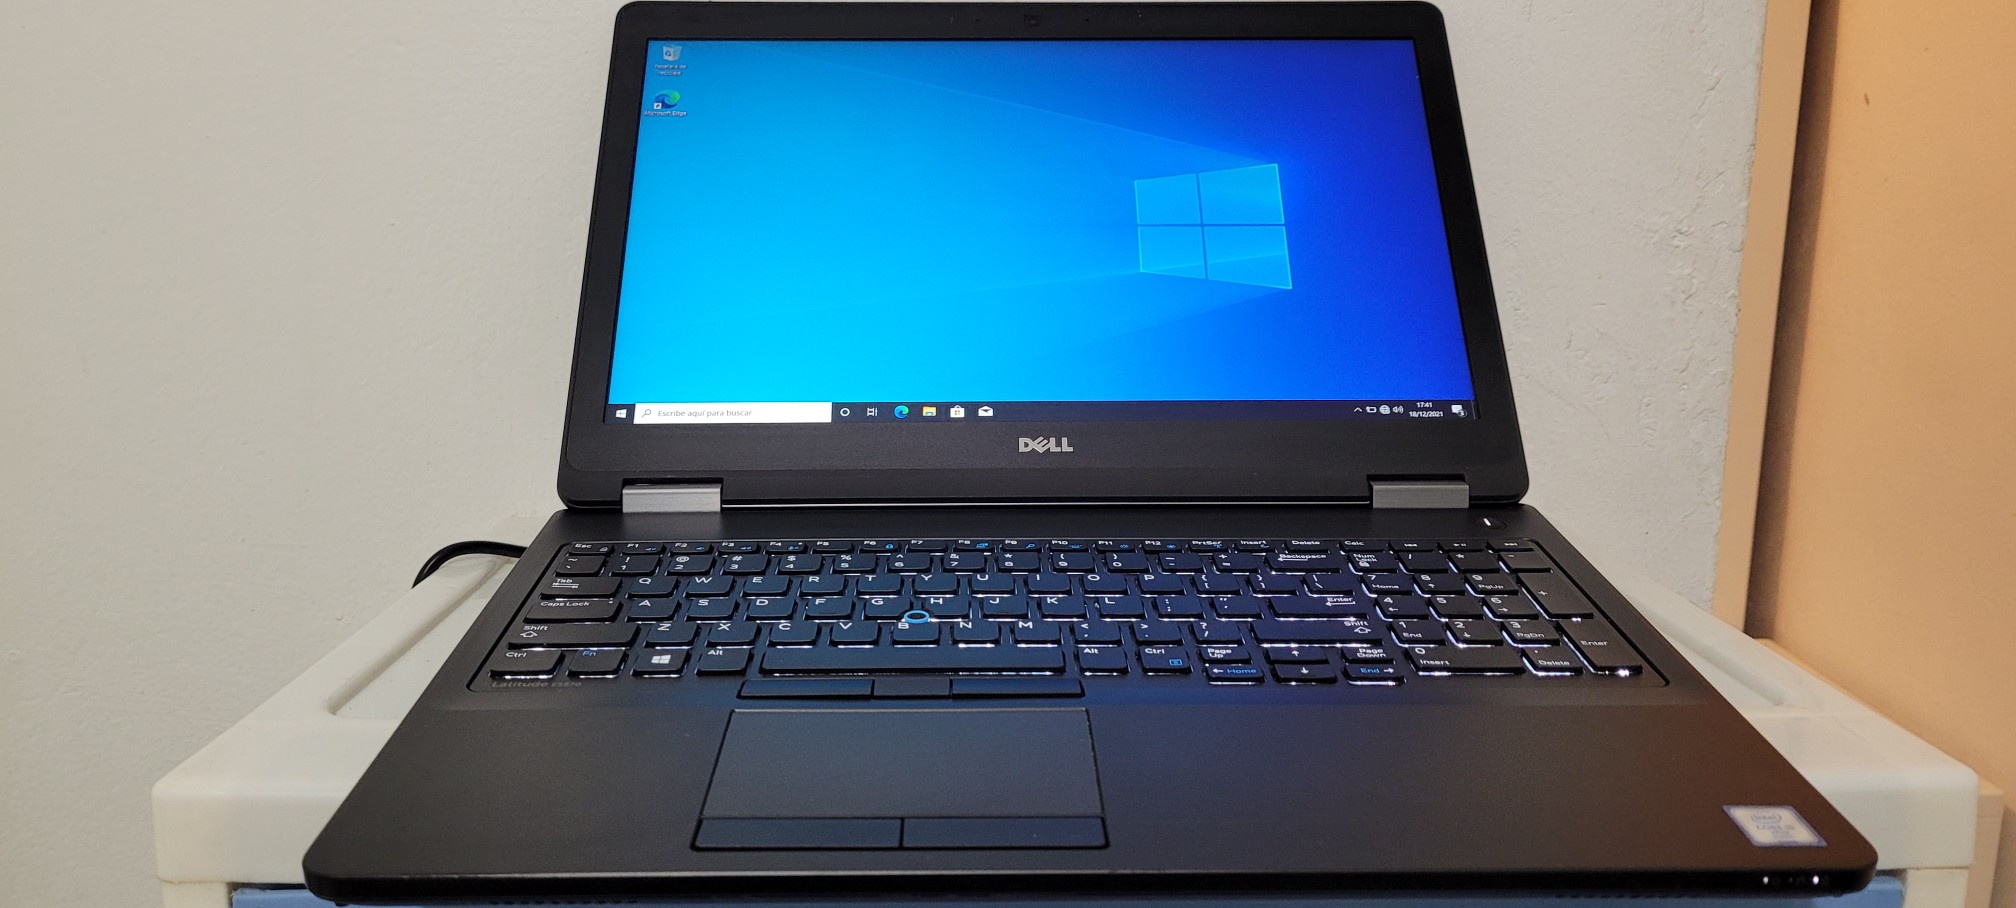 computadoras y laptops - Laptop Dell 17 Pulg Core i7 2.7ghz Ram 8gb Disco 1000gb Teclado lumimico 0